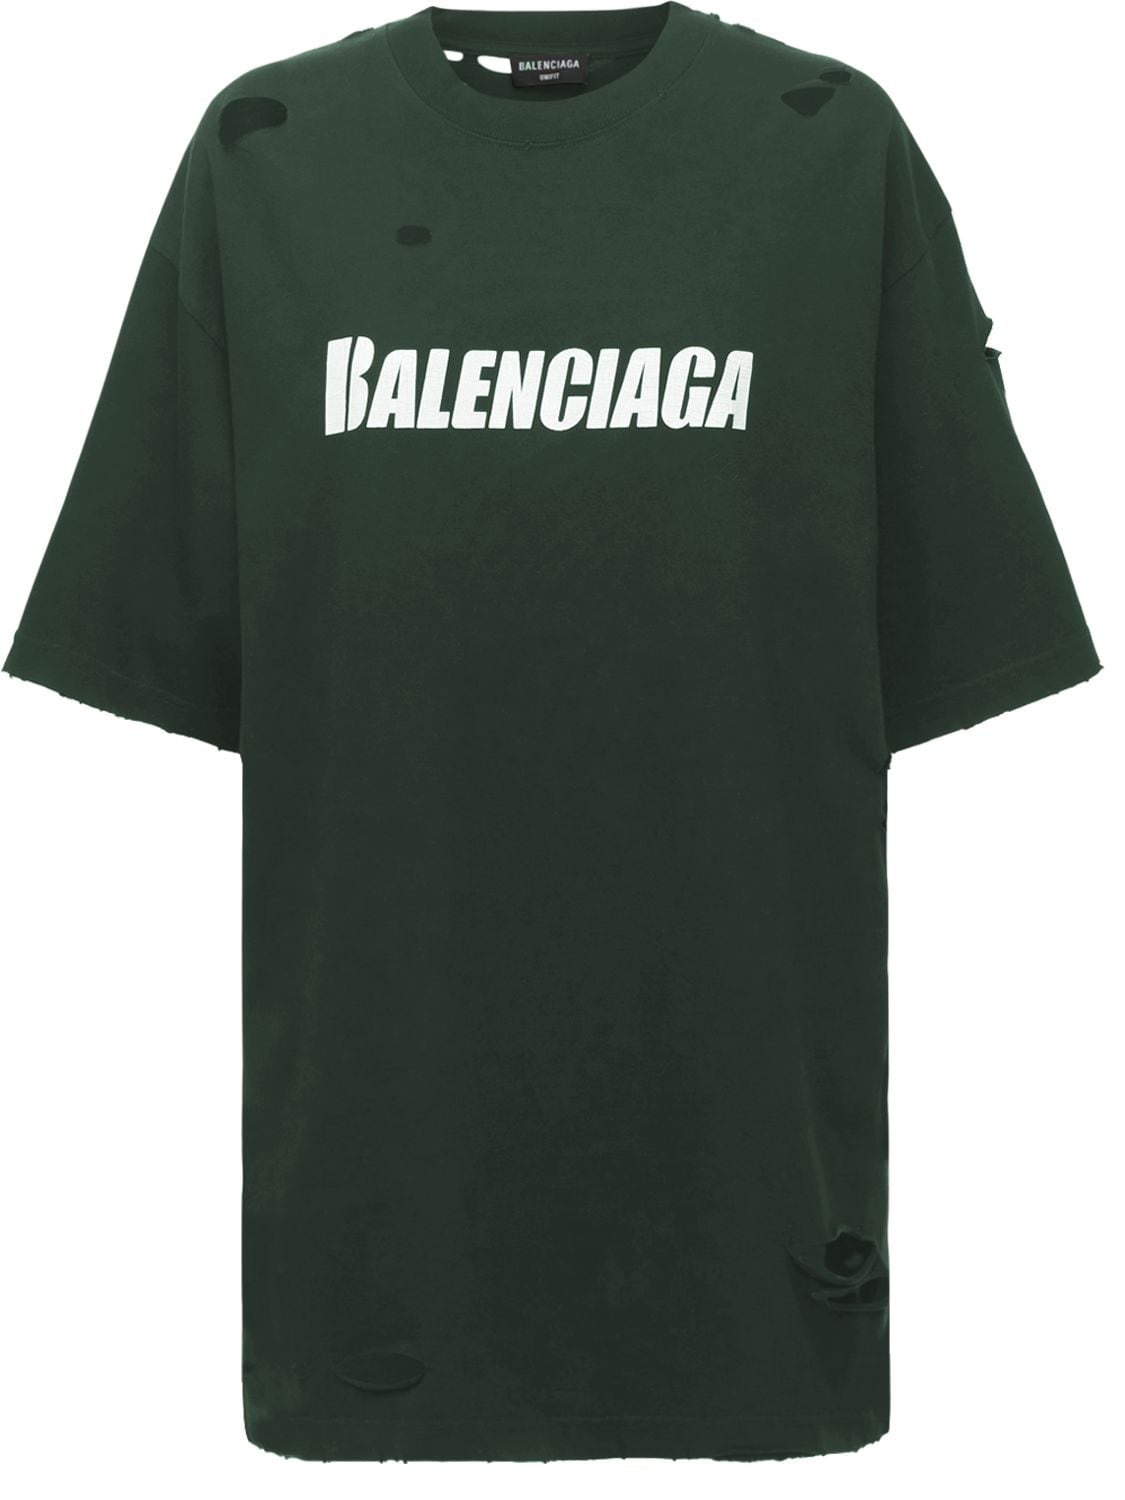 T-shirt Oversize In Jersey Distressed Con Logo - BALENCIAGA - Modalova